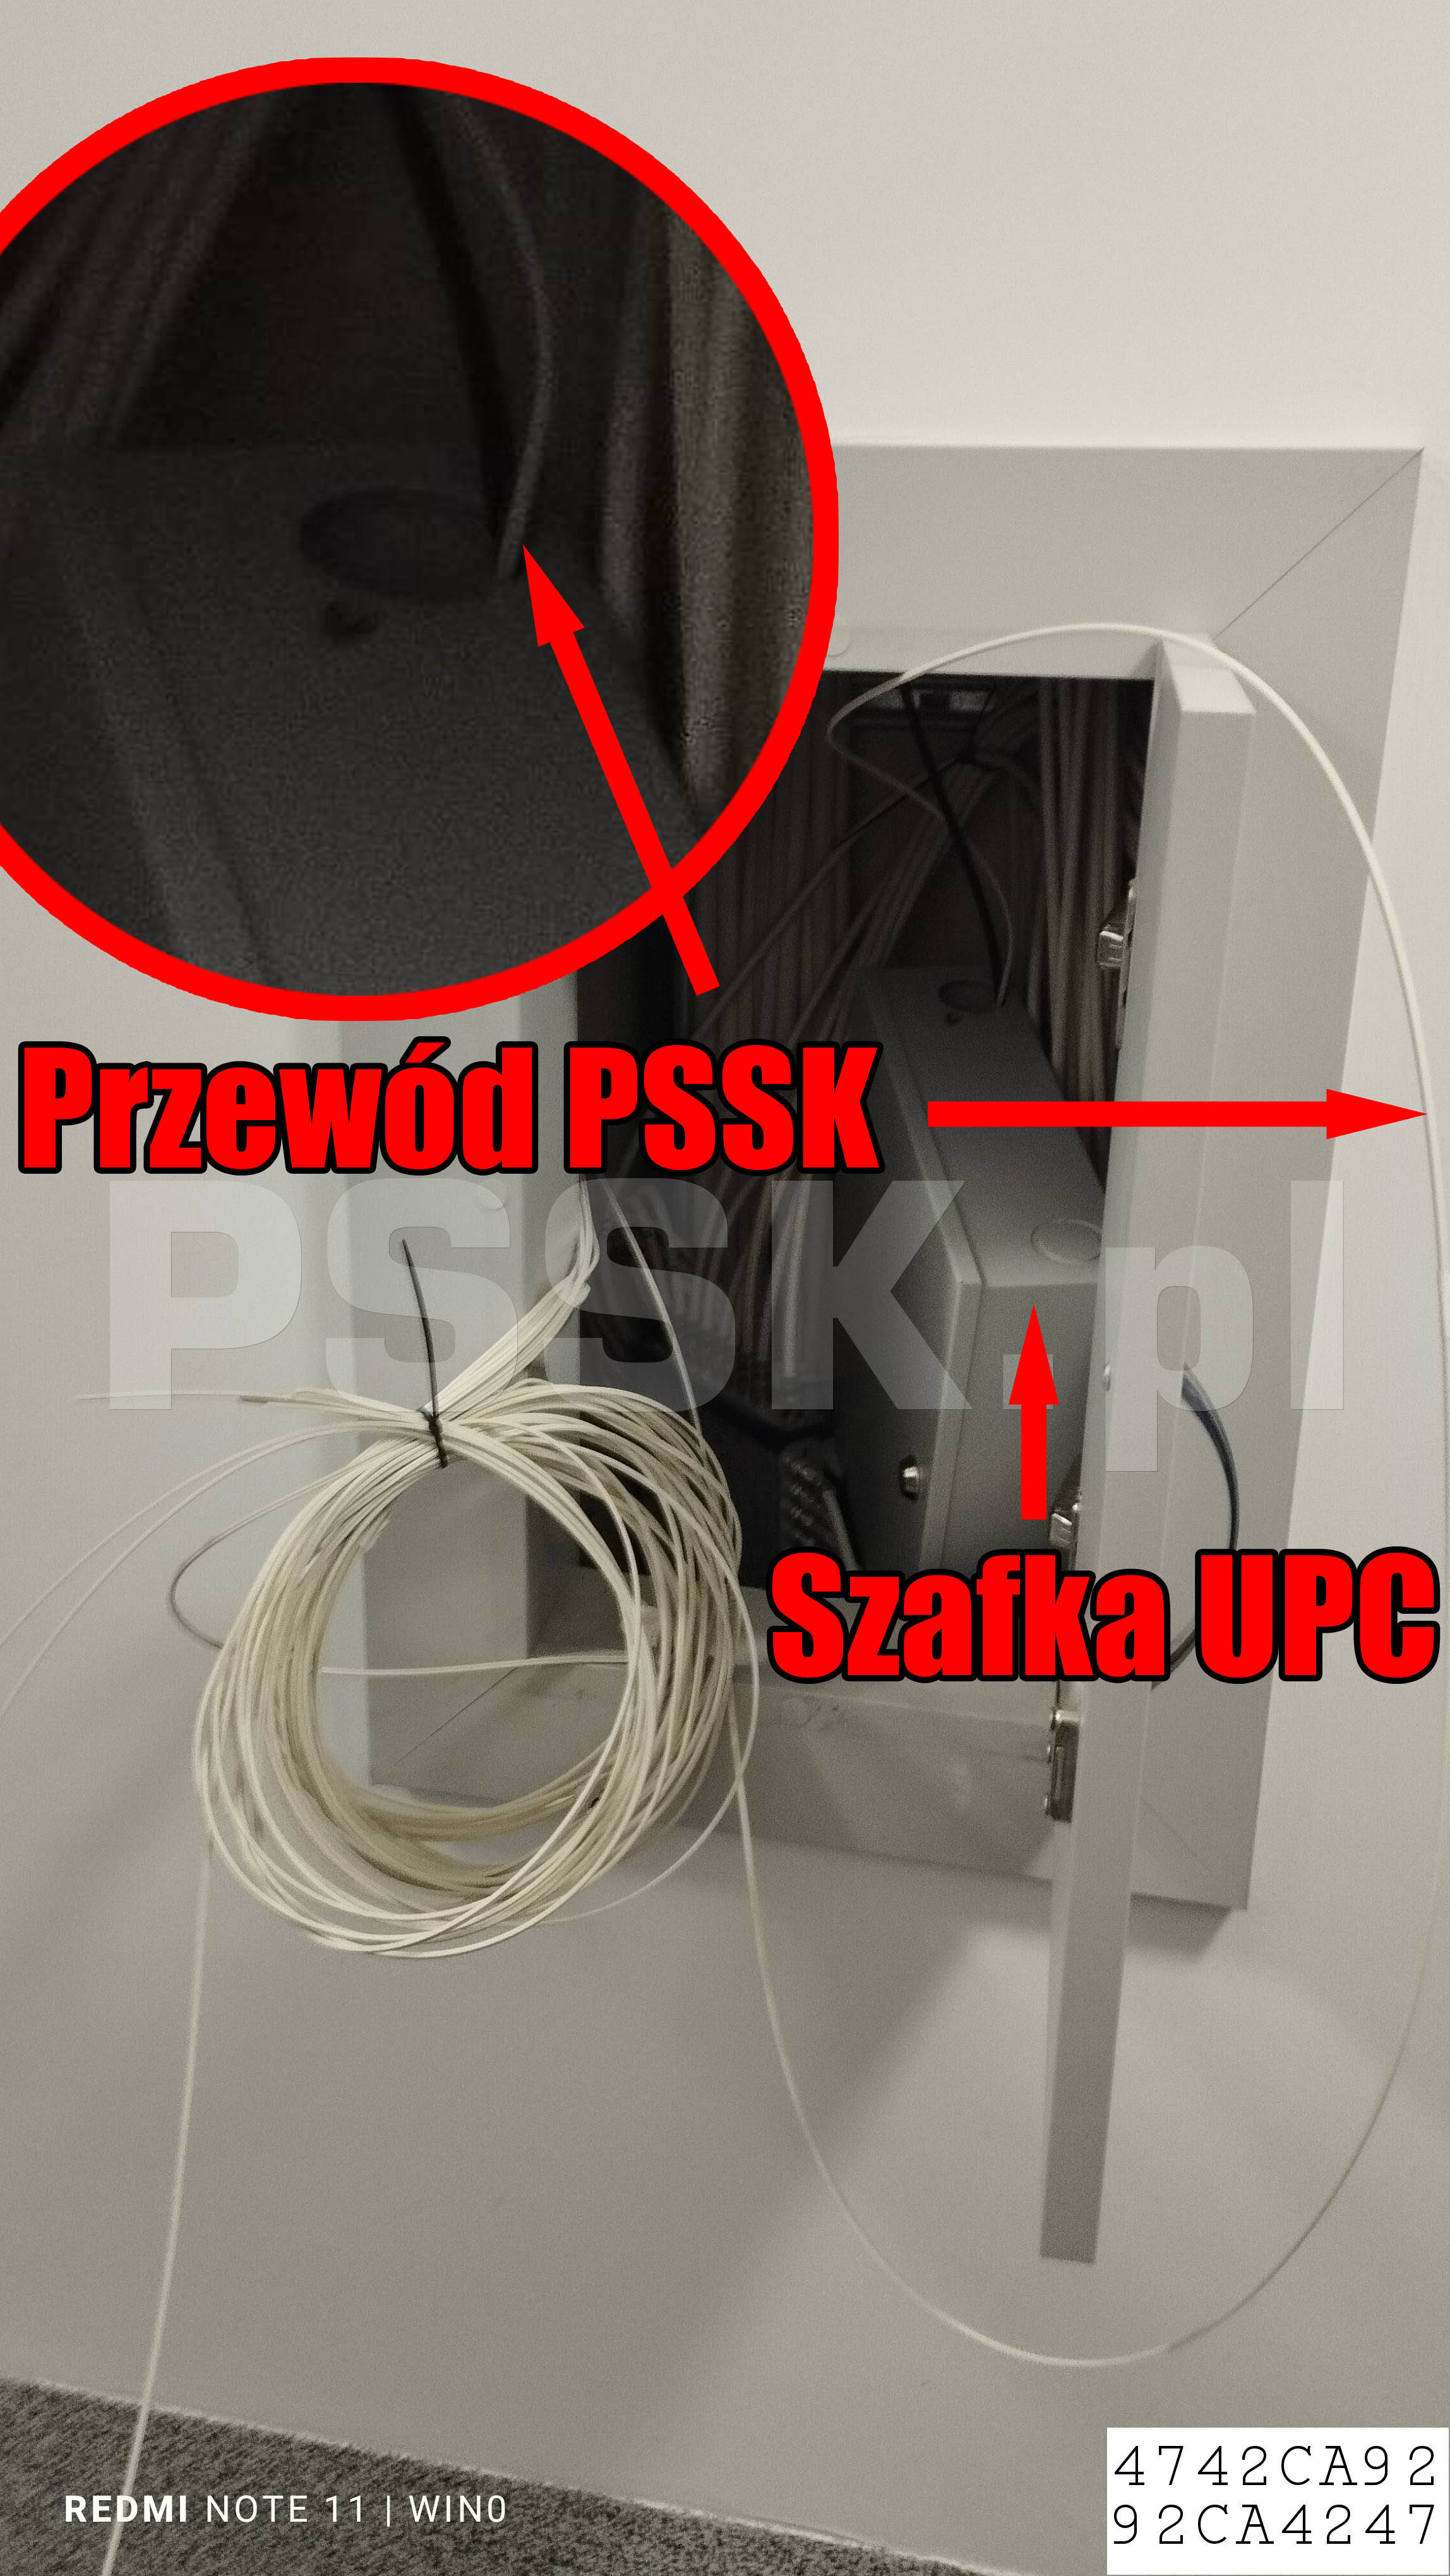 UPC Polska Sp. z o.o. dewastuje przewody firm konkurencyjnych